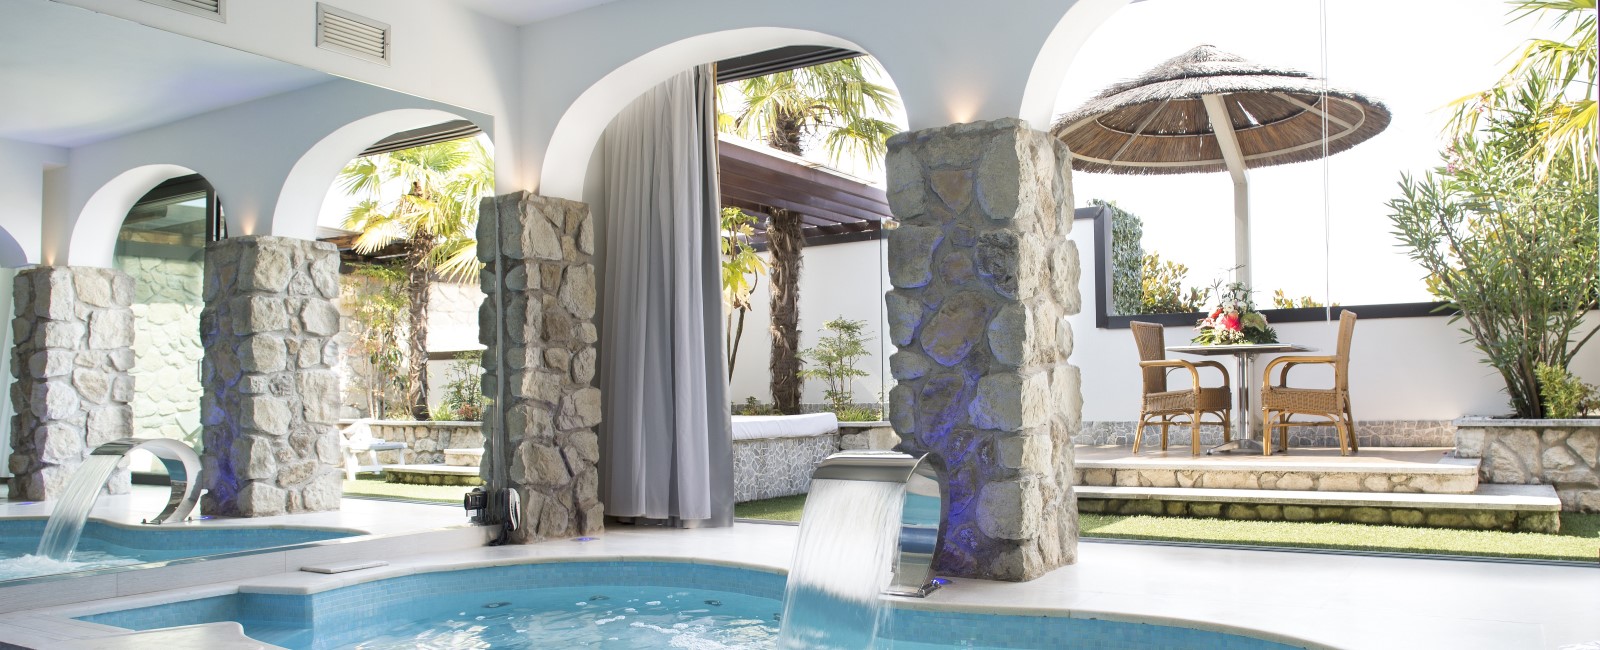 Motel K FantaSuite Antigua vista sul terrazzo esterno con gazebo e letto estivo, piscina idromassaggio con cascata, specchio di fianco alla piscina, camera a tema isole dei caraibi